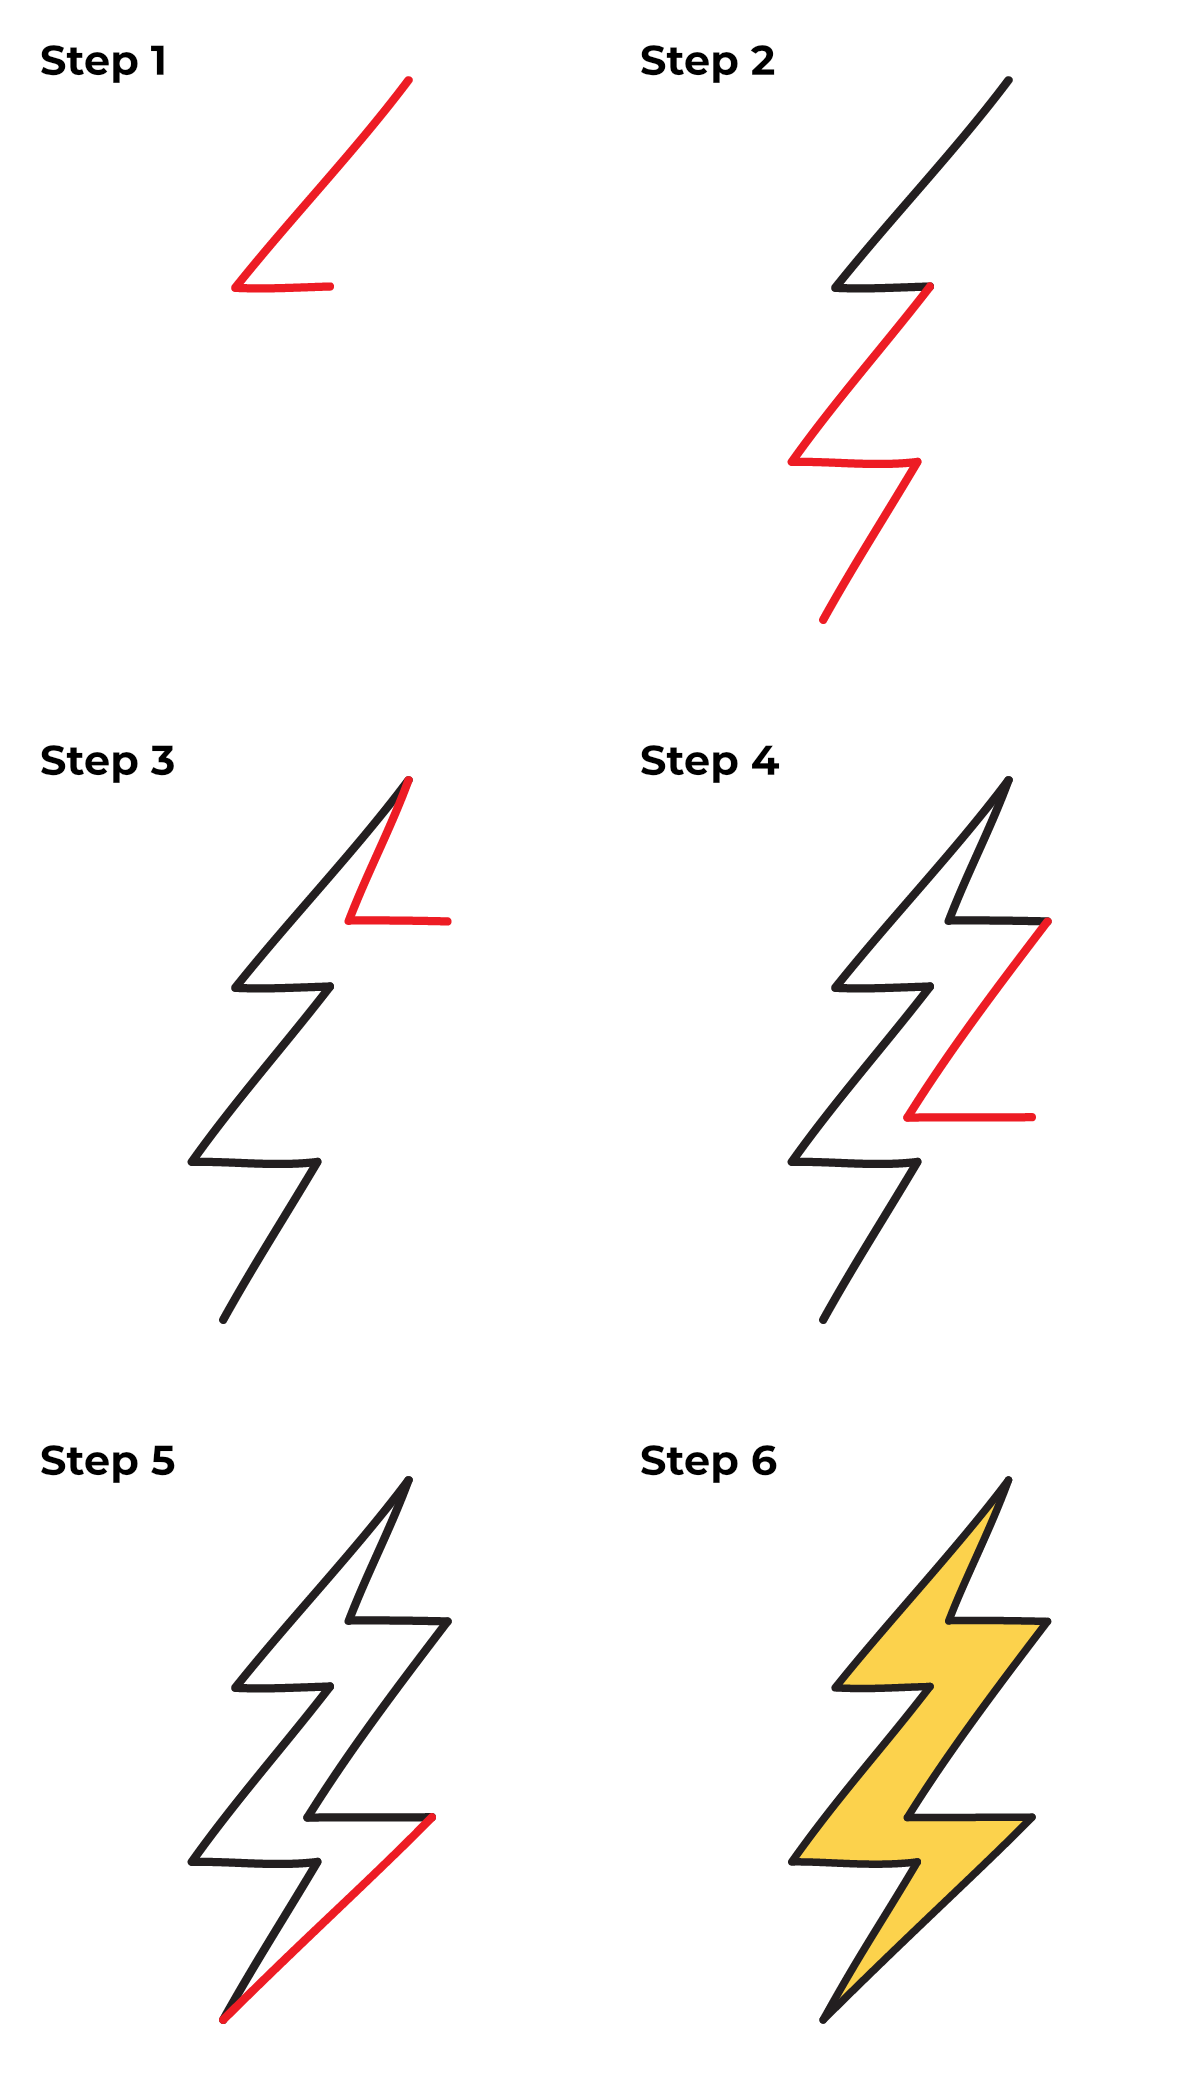 Lightning Design System Plugin for Sketch - Lightning Design System